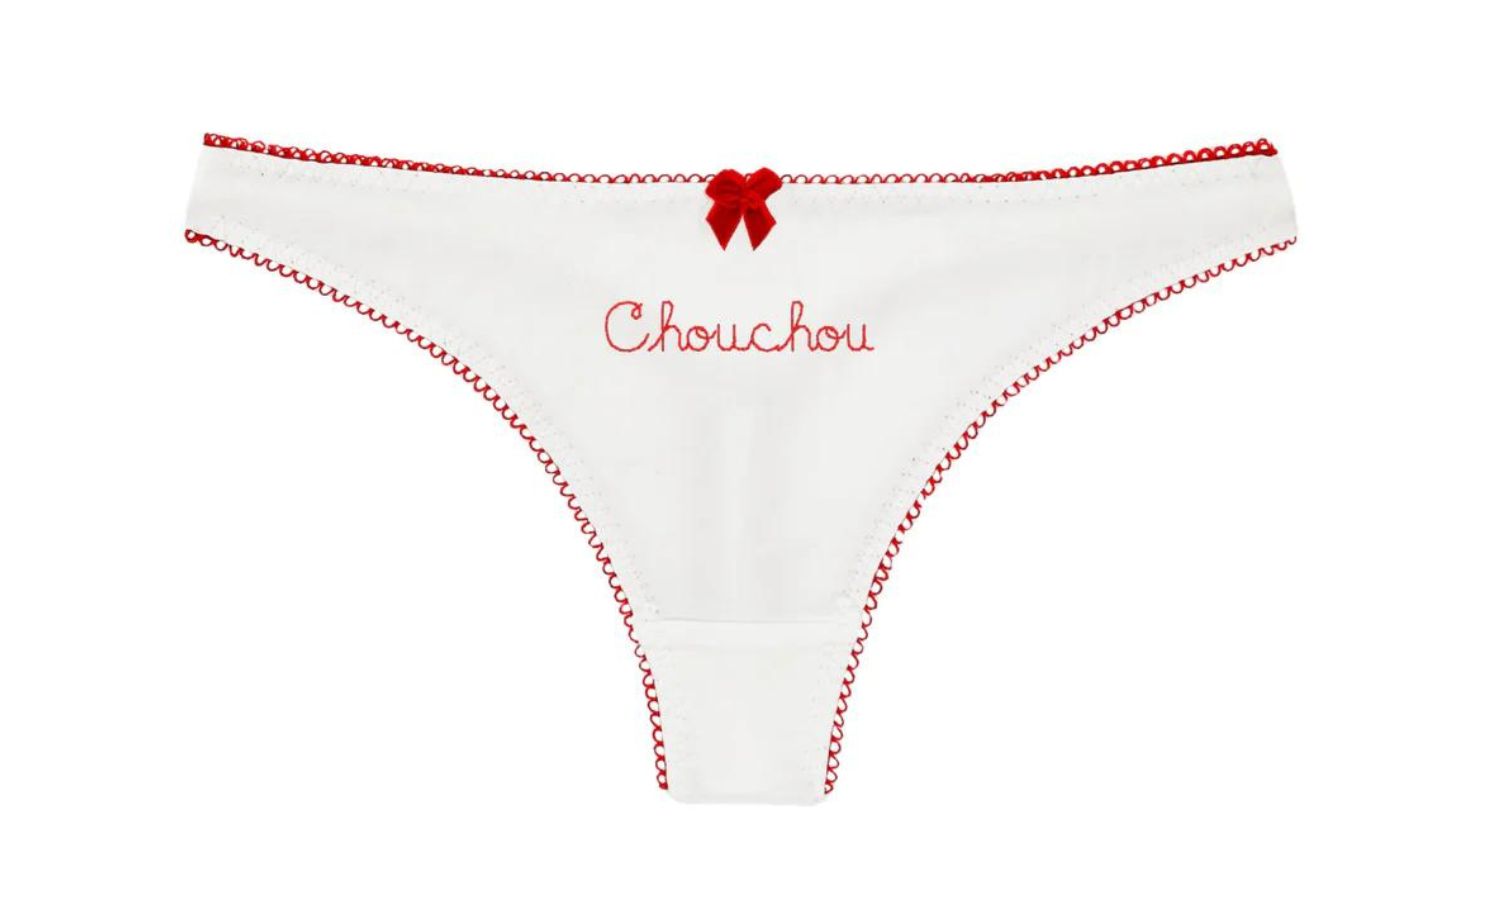 Chouchou underwear